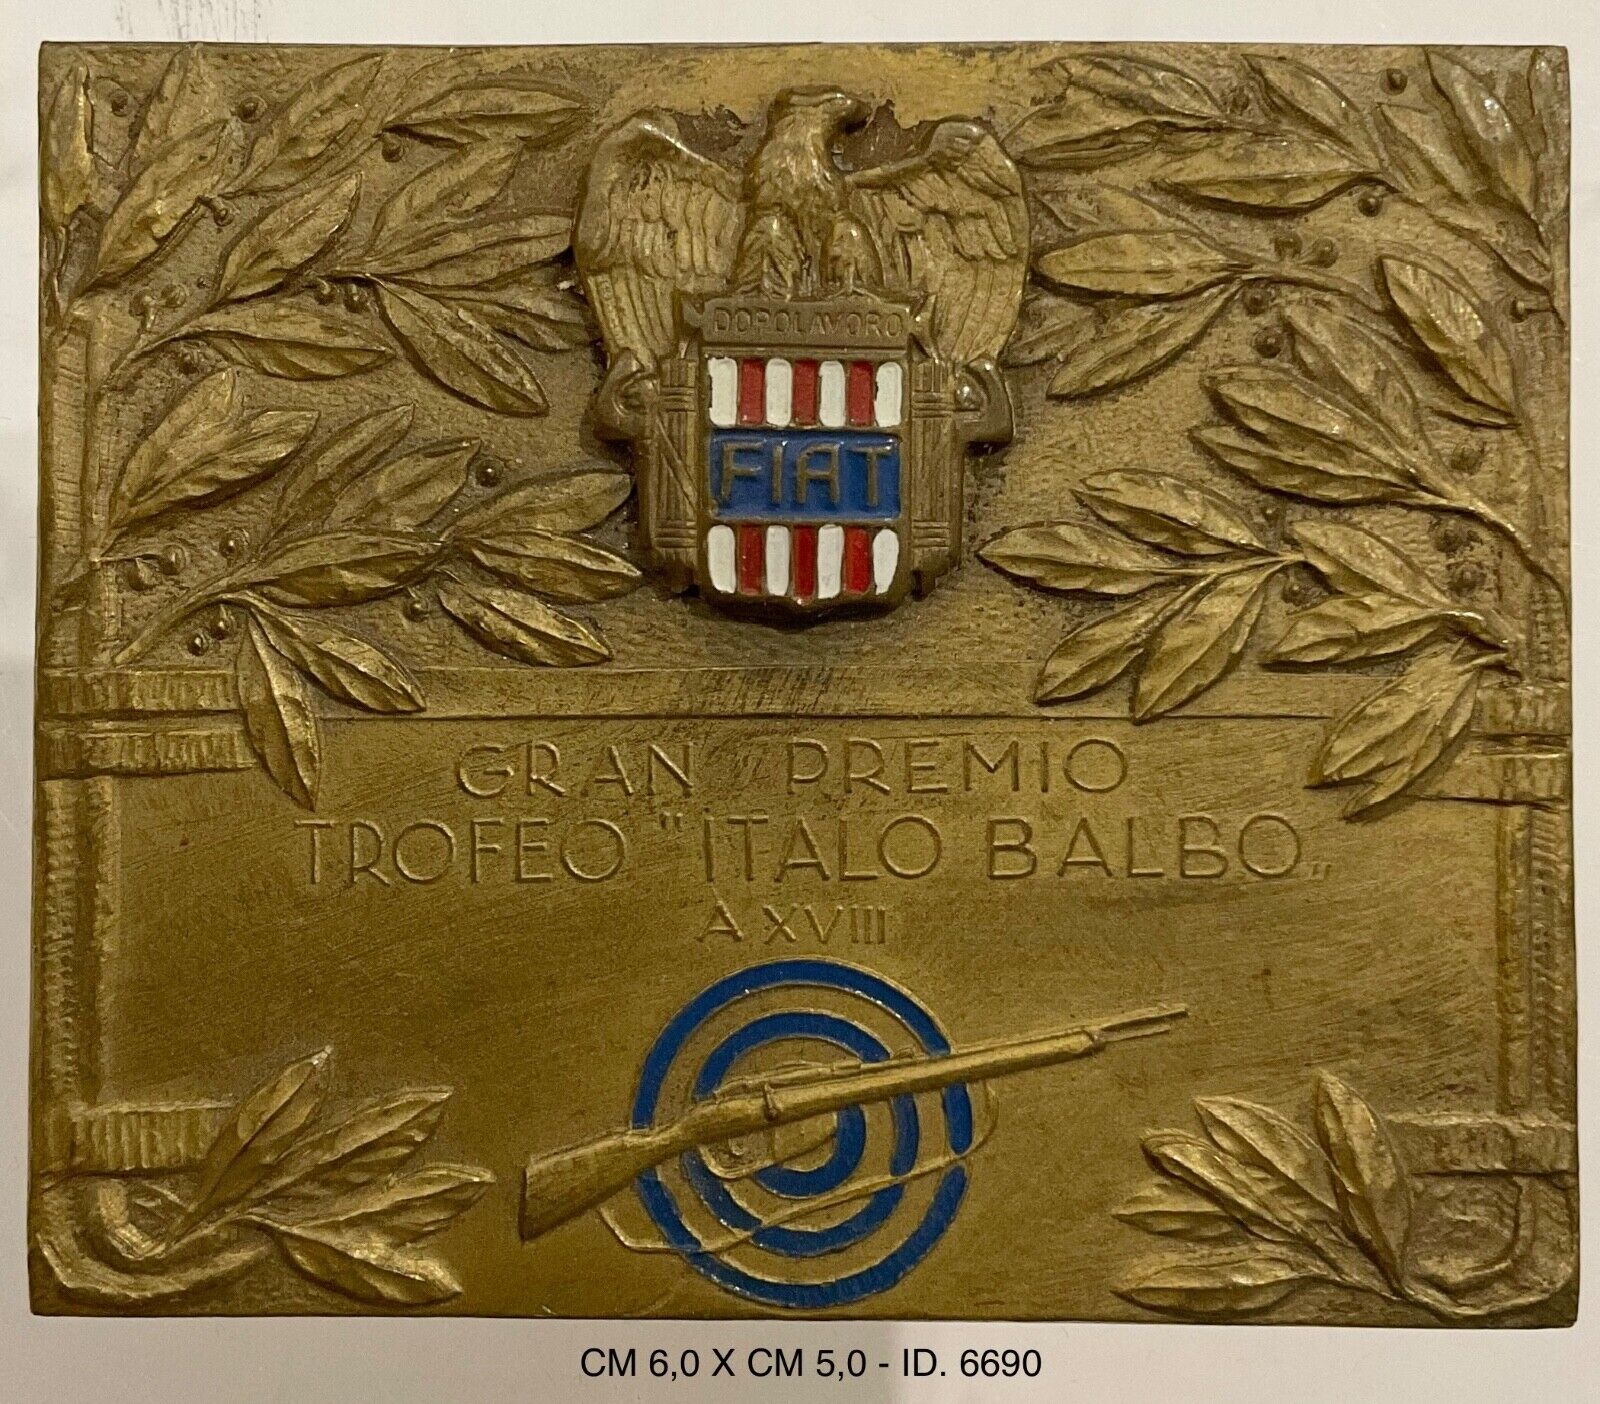 GRAN PREMIO TIRO A SEGNO TROFEO ITALO BALBO PLACCHETTA FIAT TORINO A.XVIII° 1940